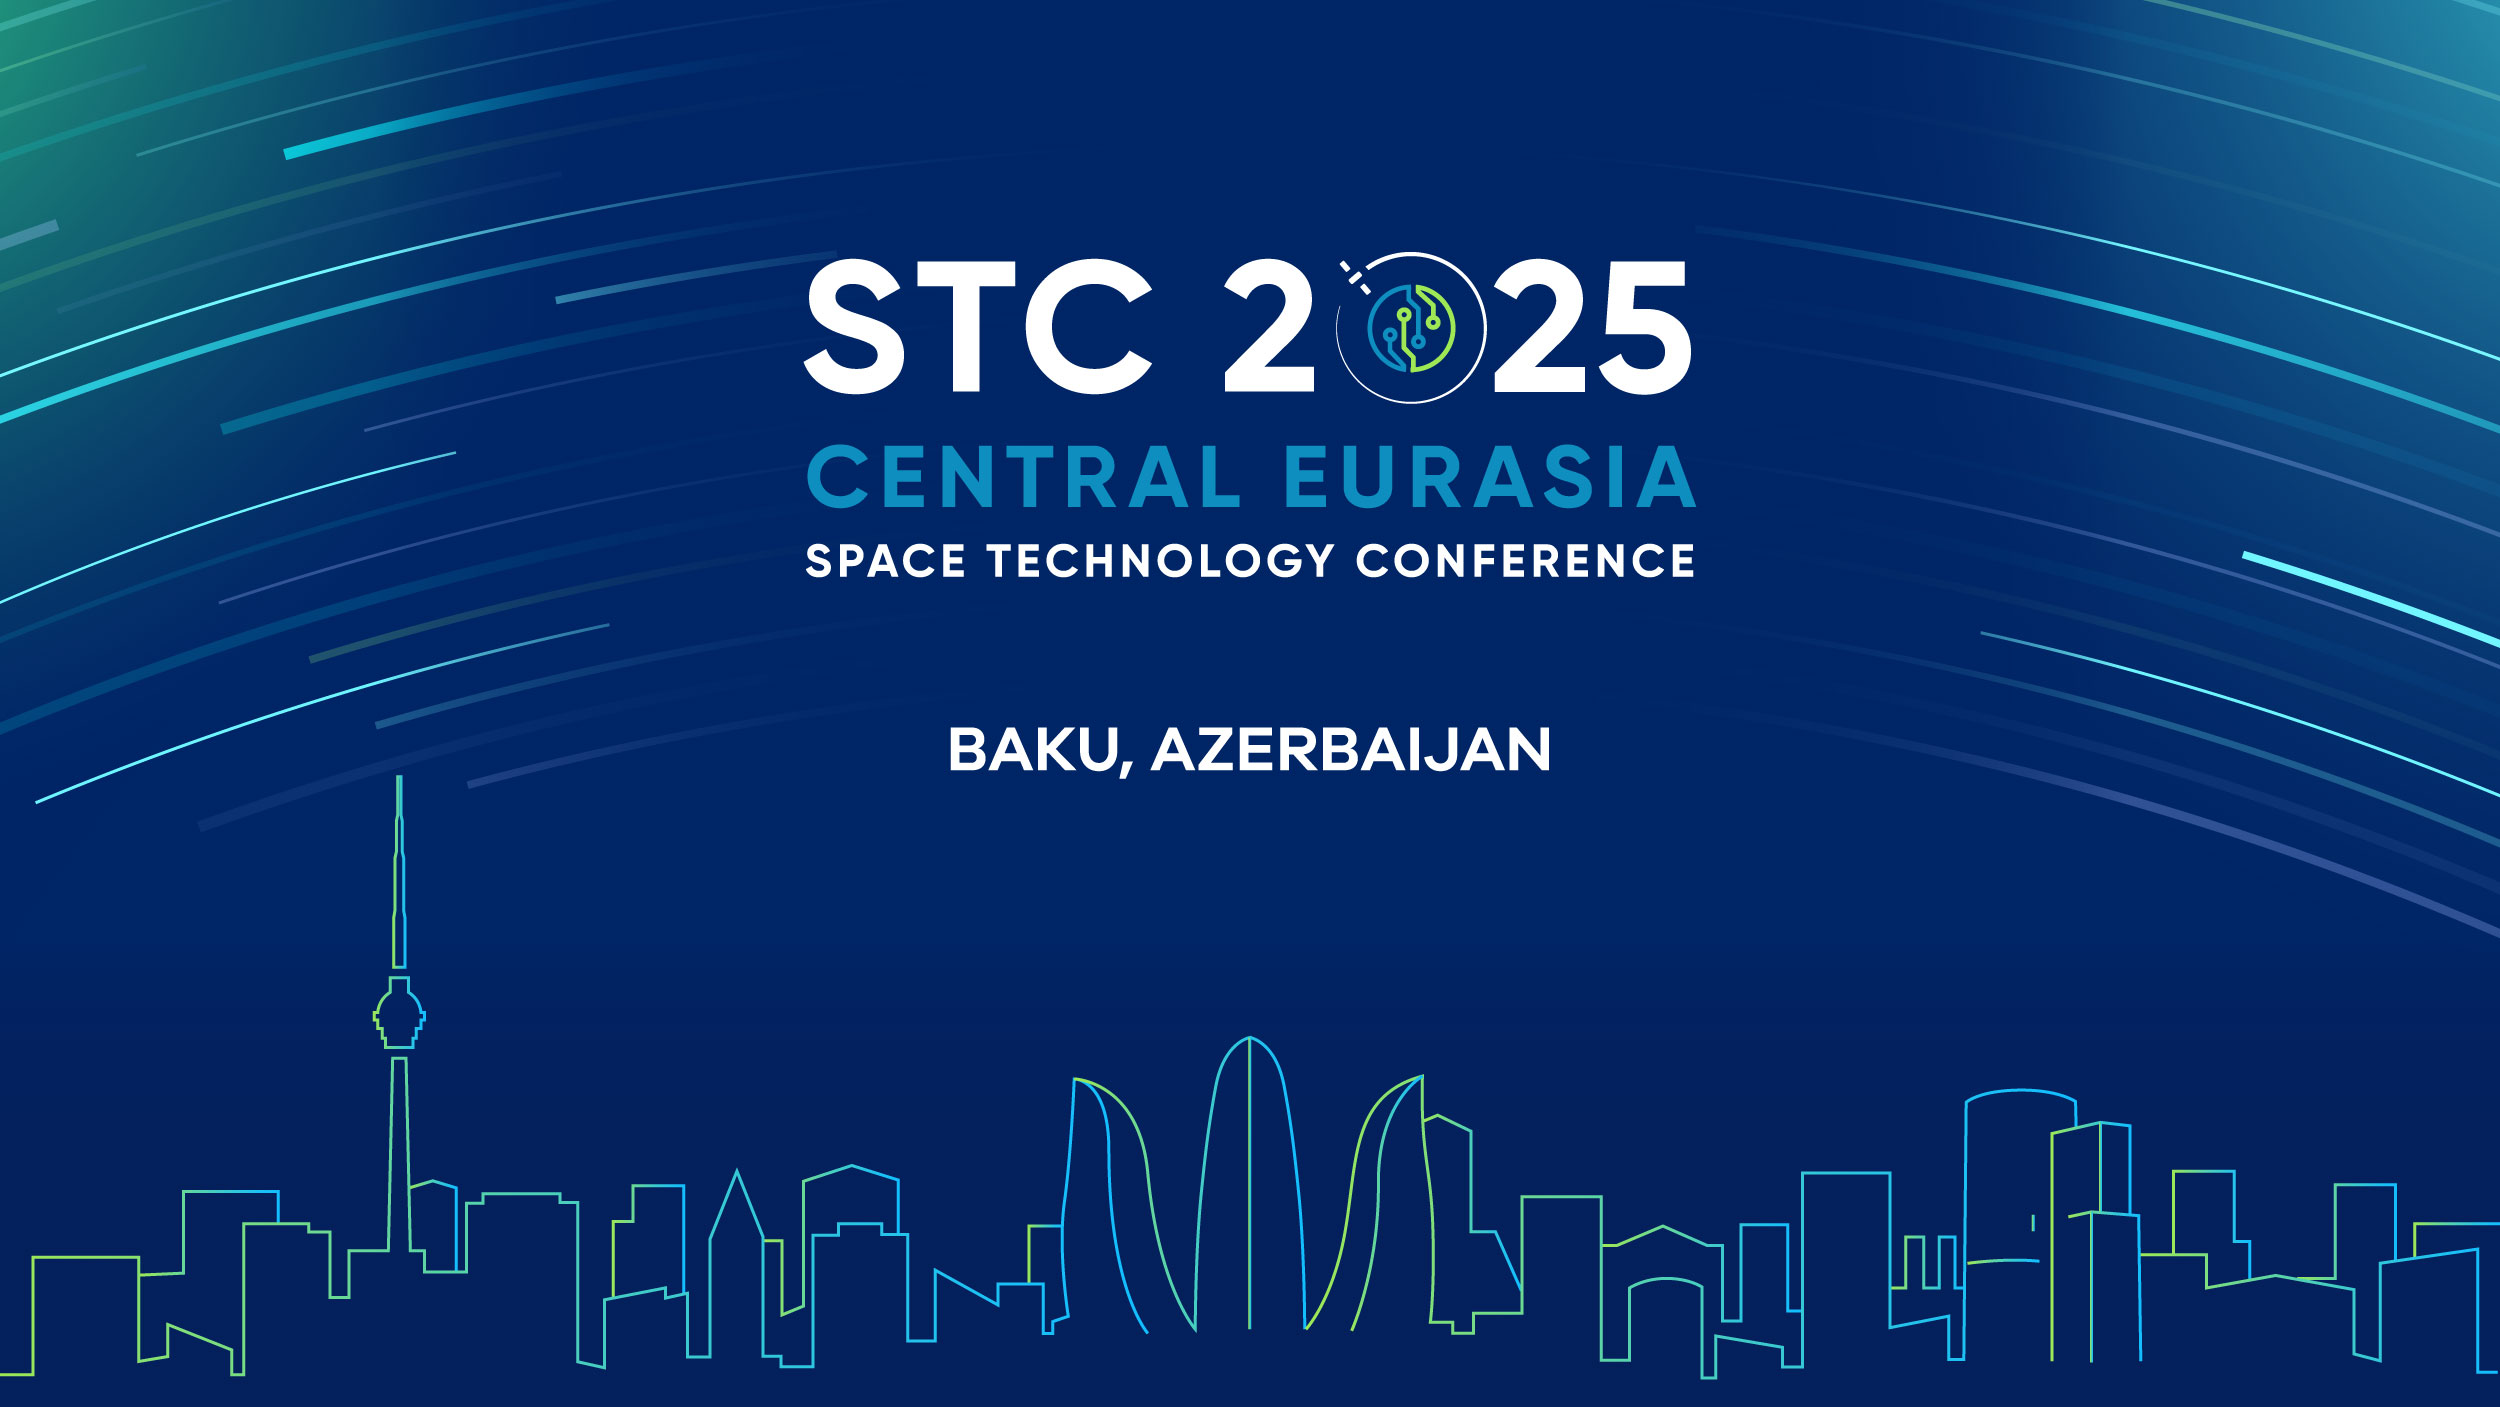 Baku Named Host City for STC 2025